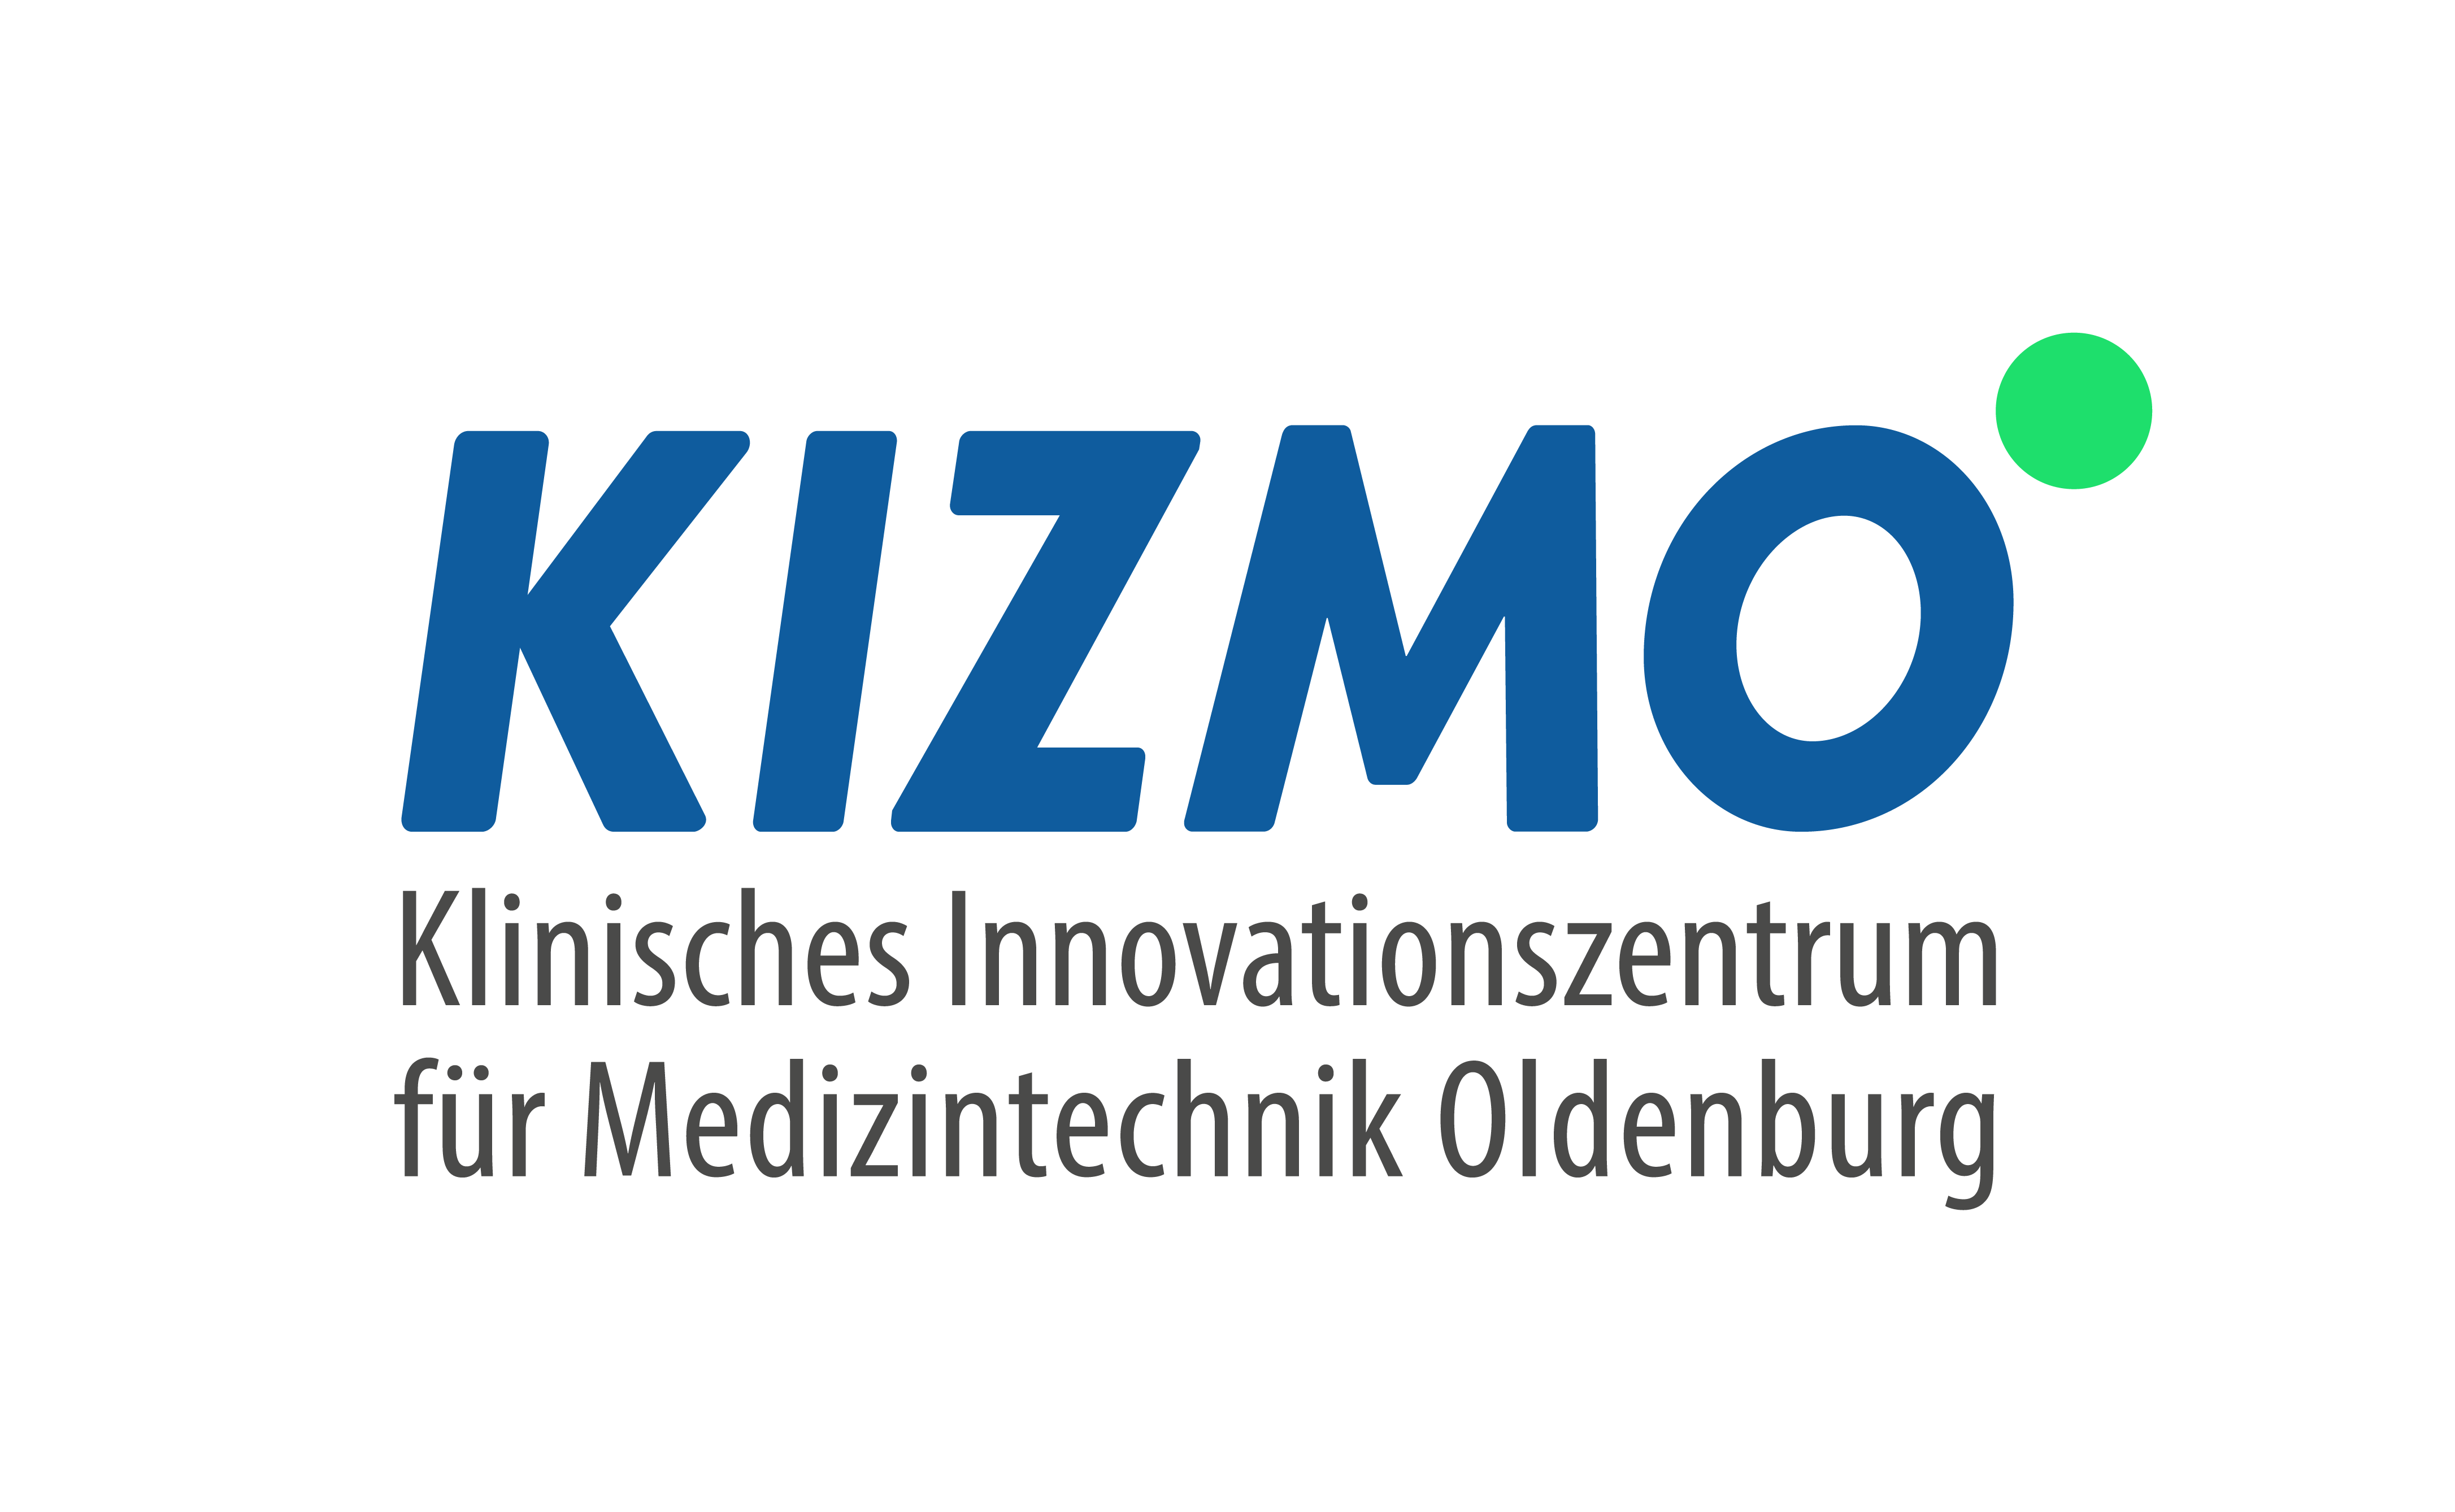 Mit Unterstützung des Klinischen innovationszentrums für Medizintechnik Oldenburg